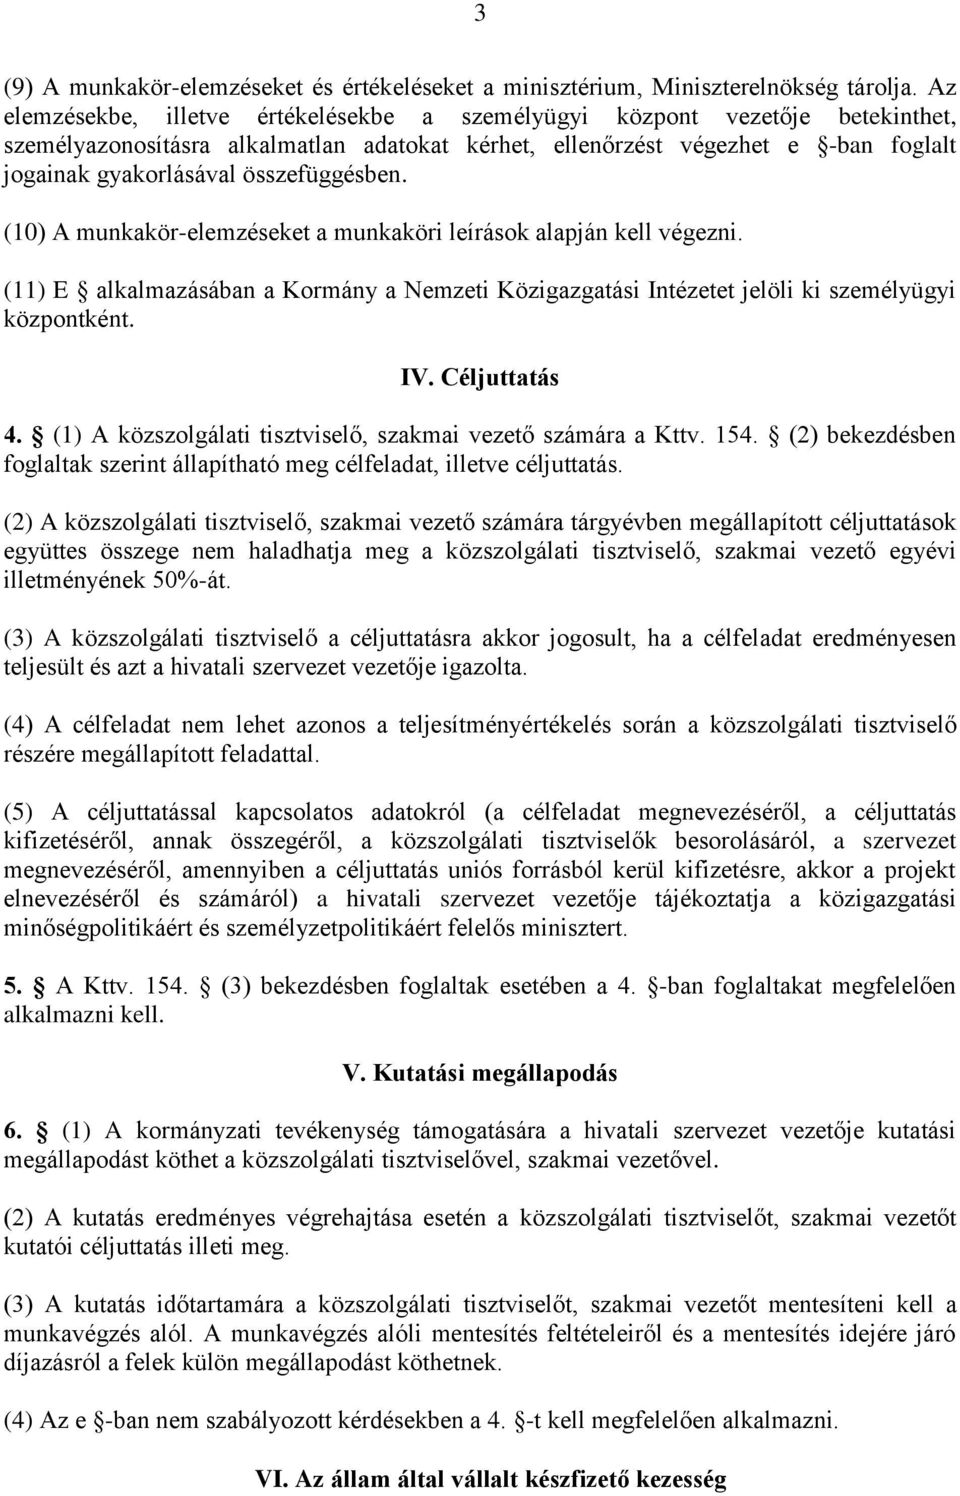 összefüggésben. (10) A munkakör-elemzéseket a munkaköri leírások alapján kell végezni. (11) E alkalmazásában a Kormány a Nemzeti Közigazgatási Intézetet jelöli ki személyügyi központként. IV.